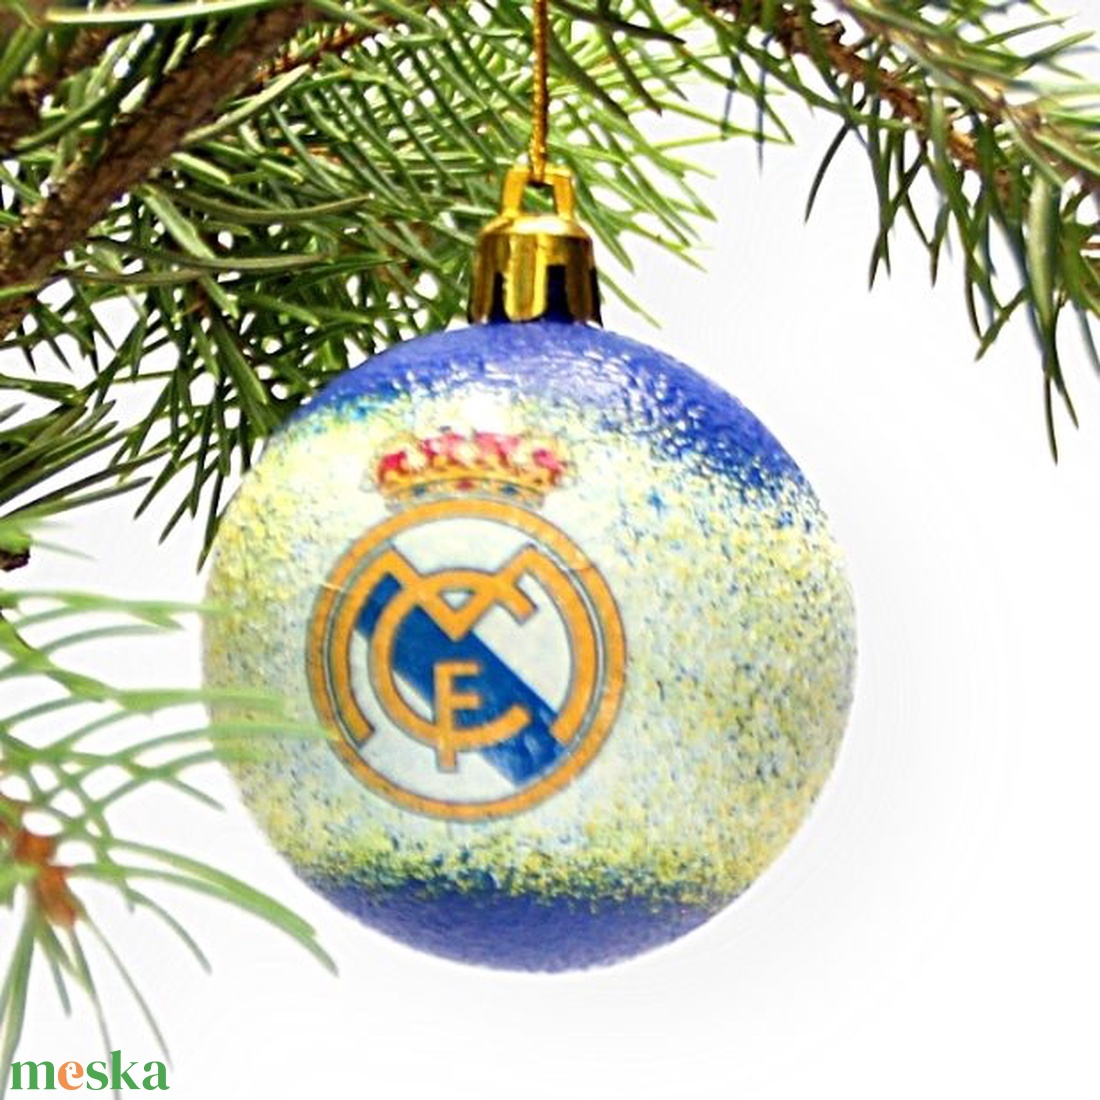 Karácsonyfa gömb foci témájú emblémával - REAL MADRID   szurkolóknak   -  párodnak mikulásra és karácsonyra  - karácsony - karácsonyi lakásdekoráció - karácsonyfadíszek - Meska.hu